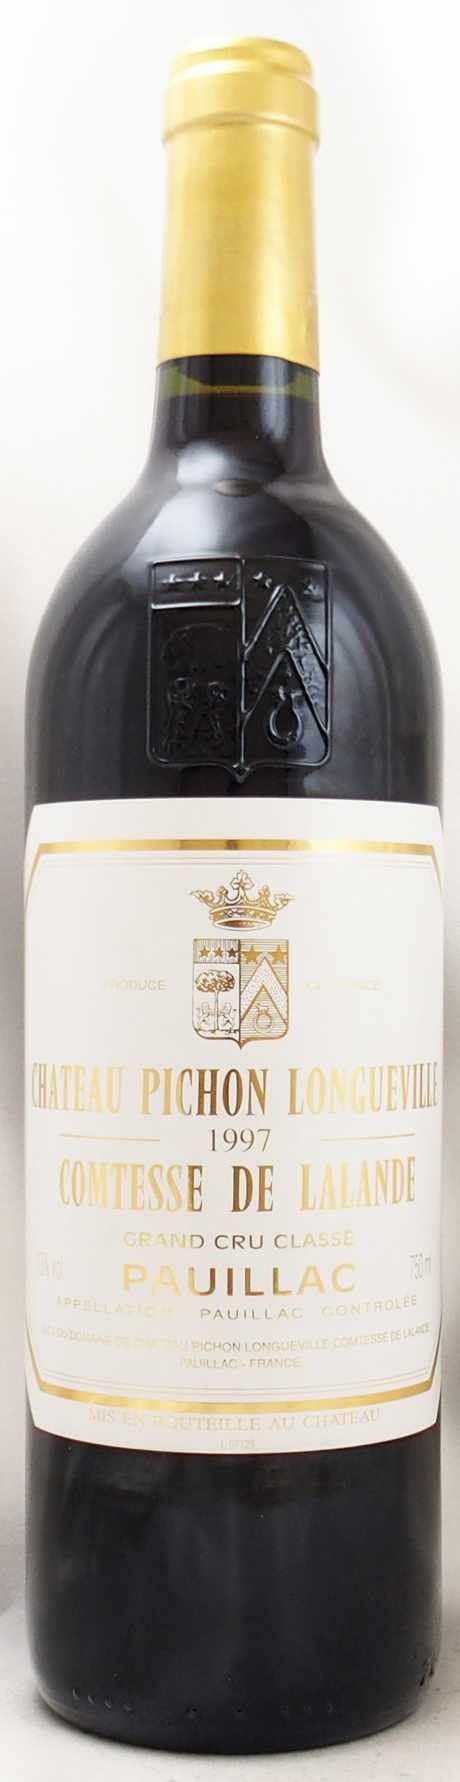 シャトー ピション ロングヴィル コンテス ド ラランド1997 - 酒